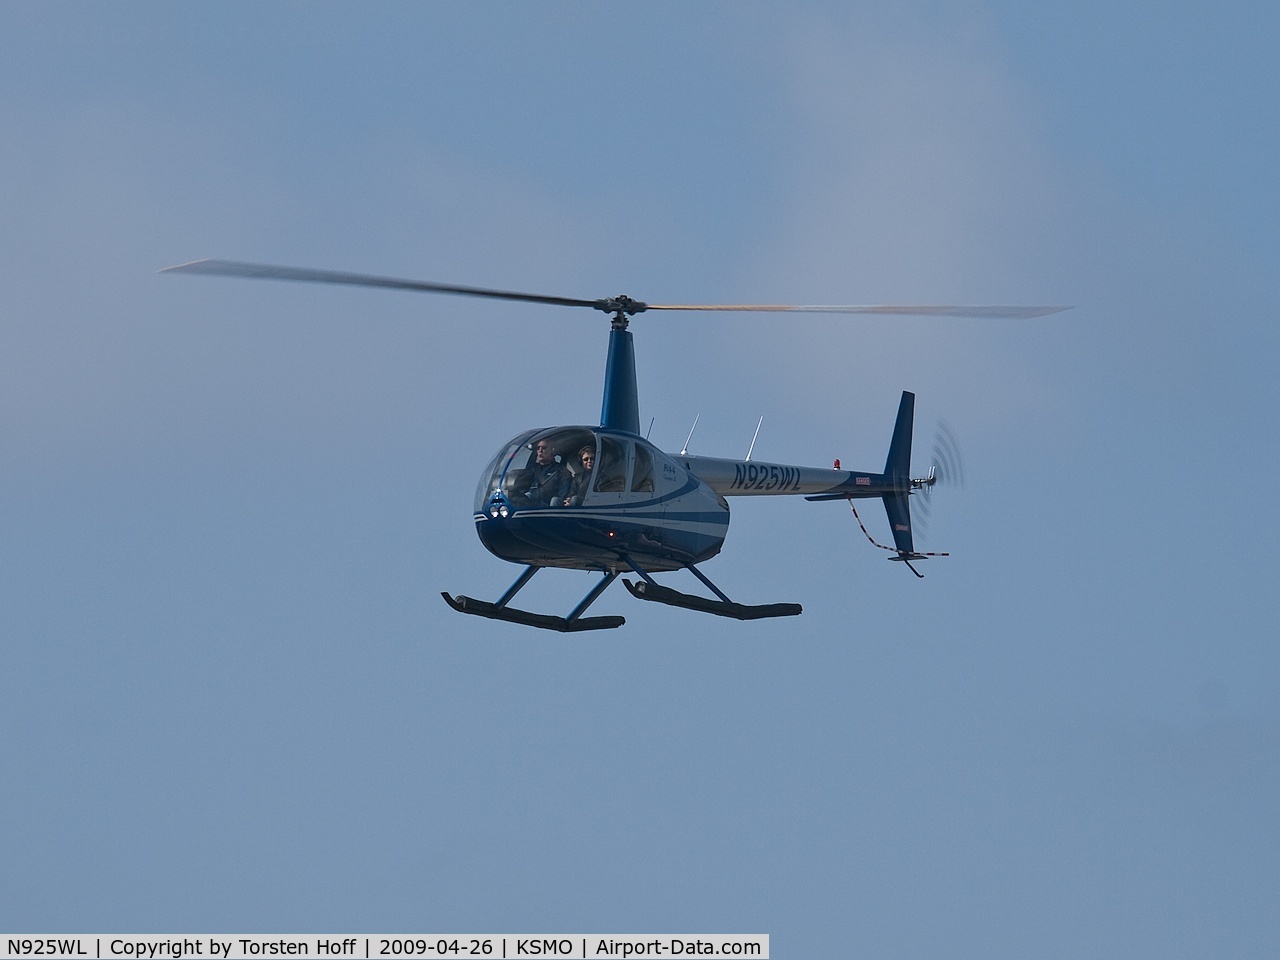 N925WL, 2004 Robinson R44 II C/N 10462, N925WL arriving on RWY 21